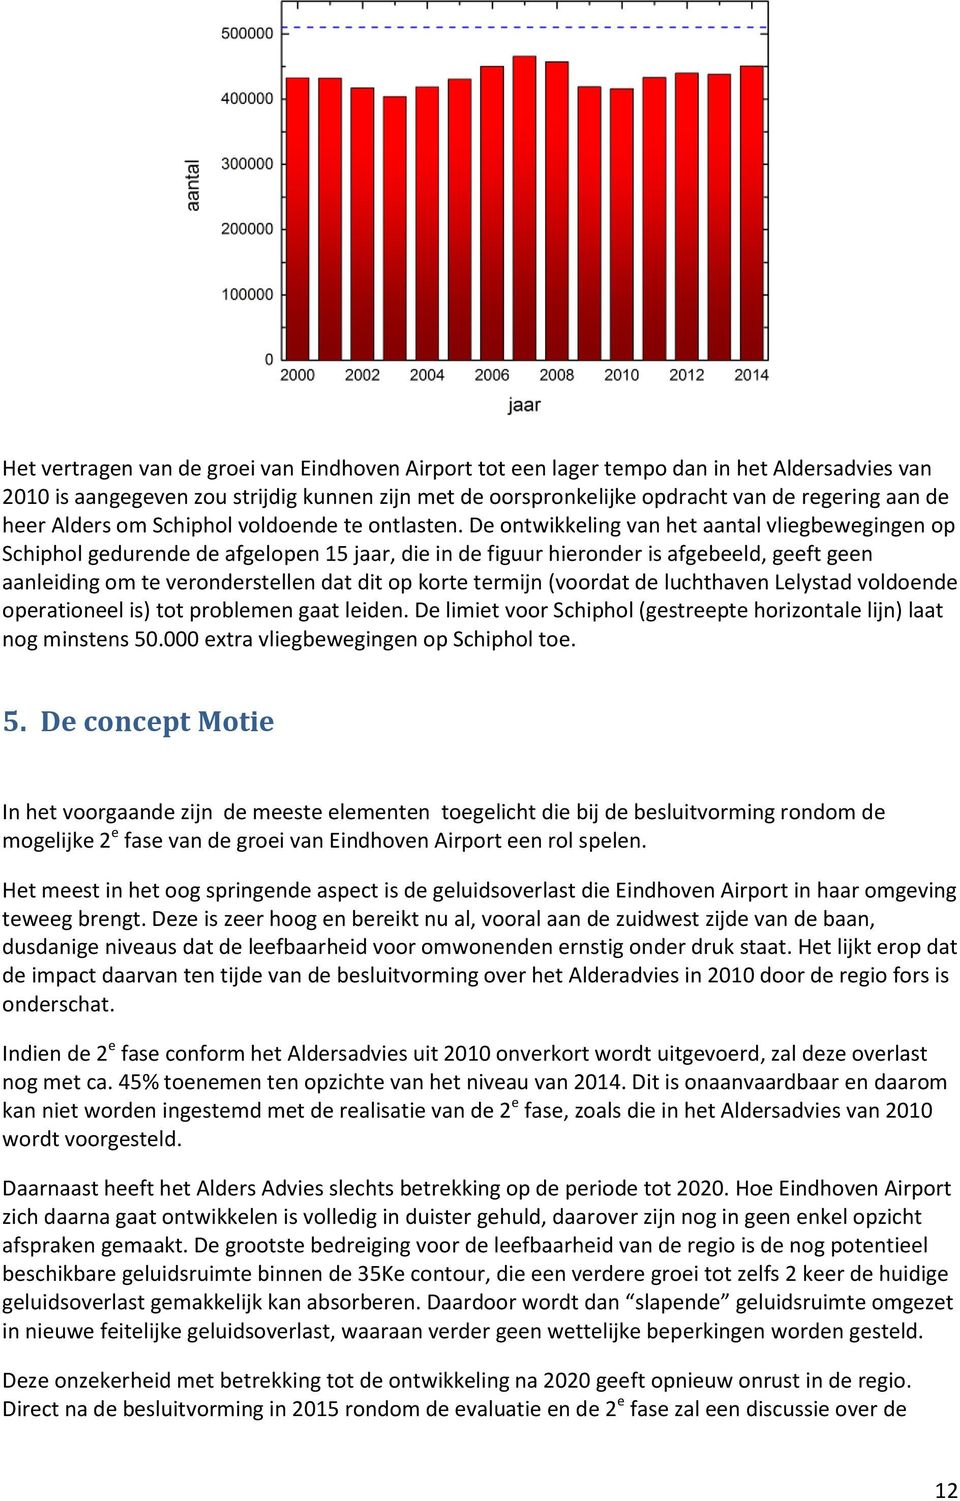 De ontwikkeling van het aantal vliegbewegingen op Schiphol gedurende de afgelopen 15 jaar, die in de figuur hieronder is afgebeeld, geeft geen aanleiding om te veronderstellen dat dit op korte